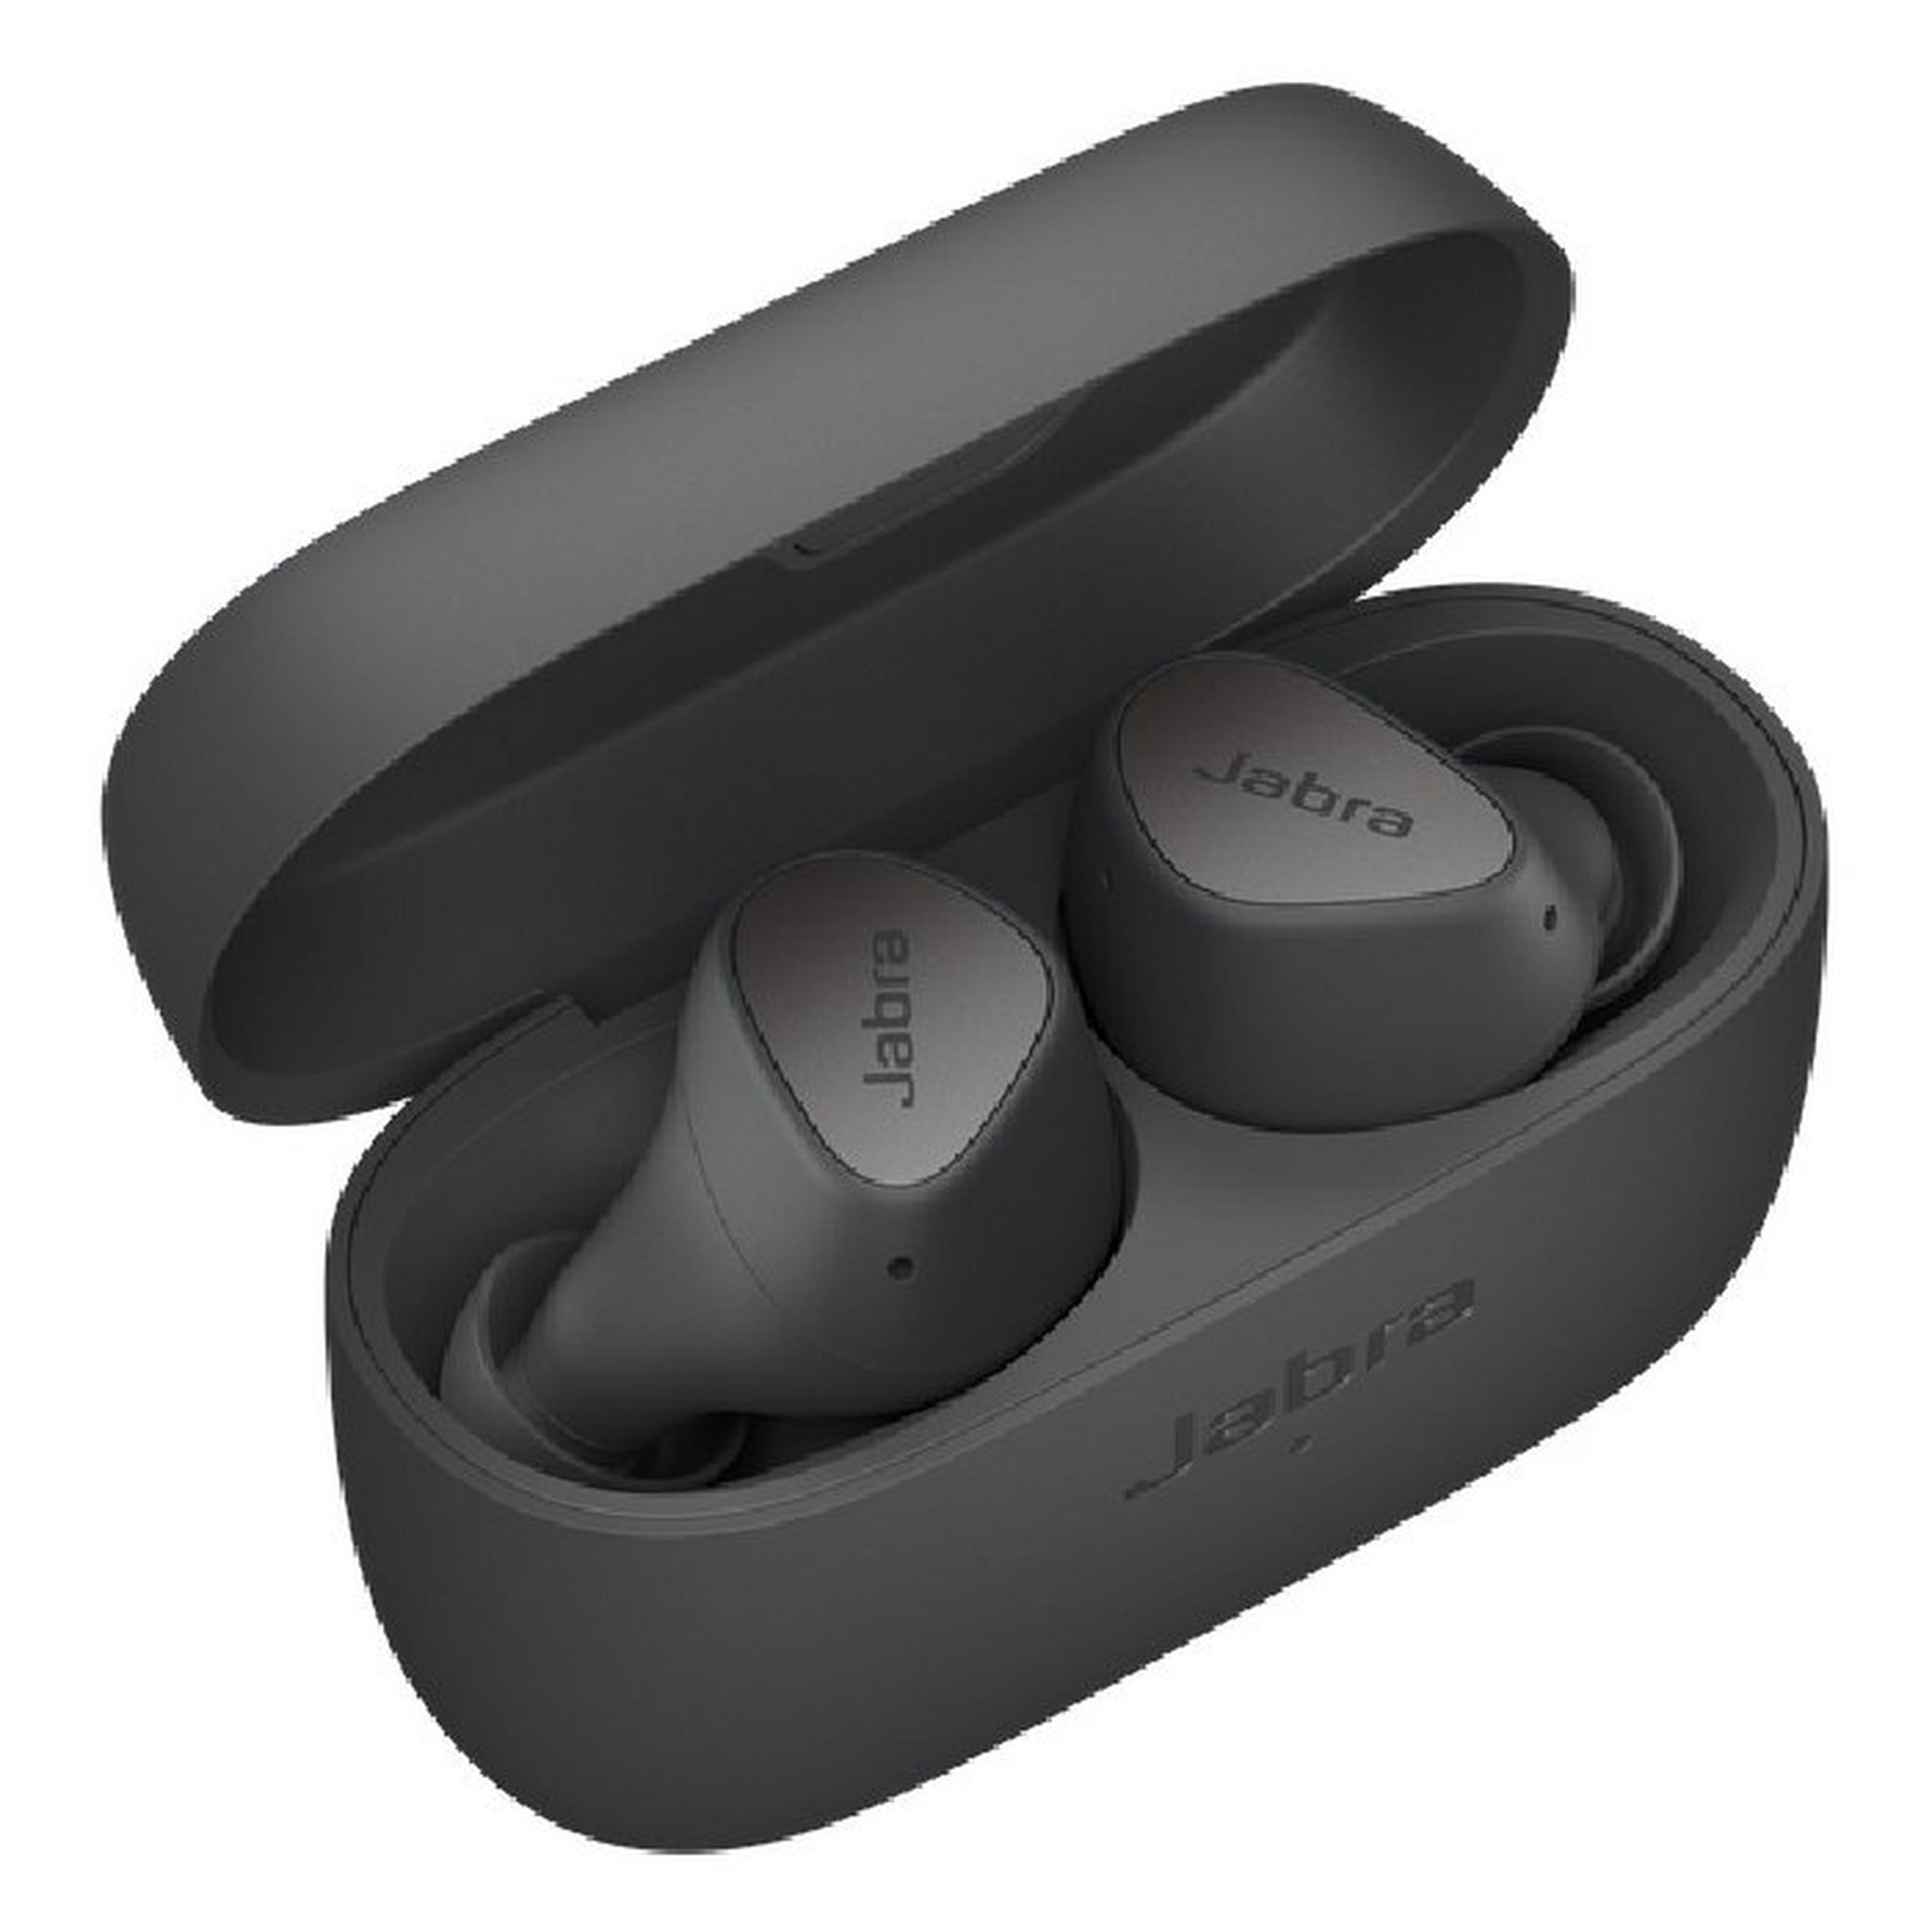 Jabra Elite 3 True Wireless 28 Hrs Earbuds - Dark Grey